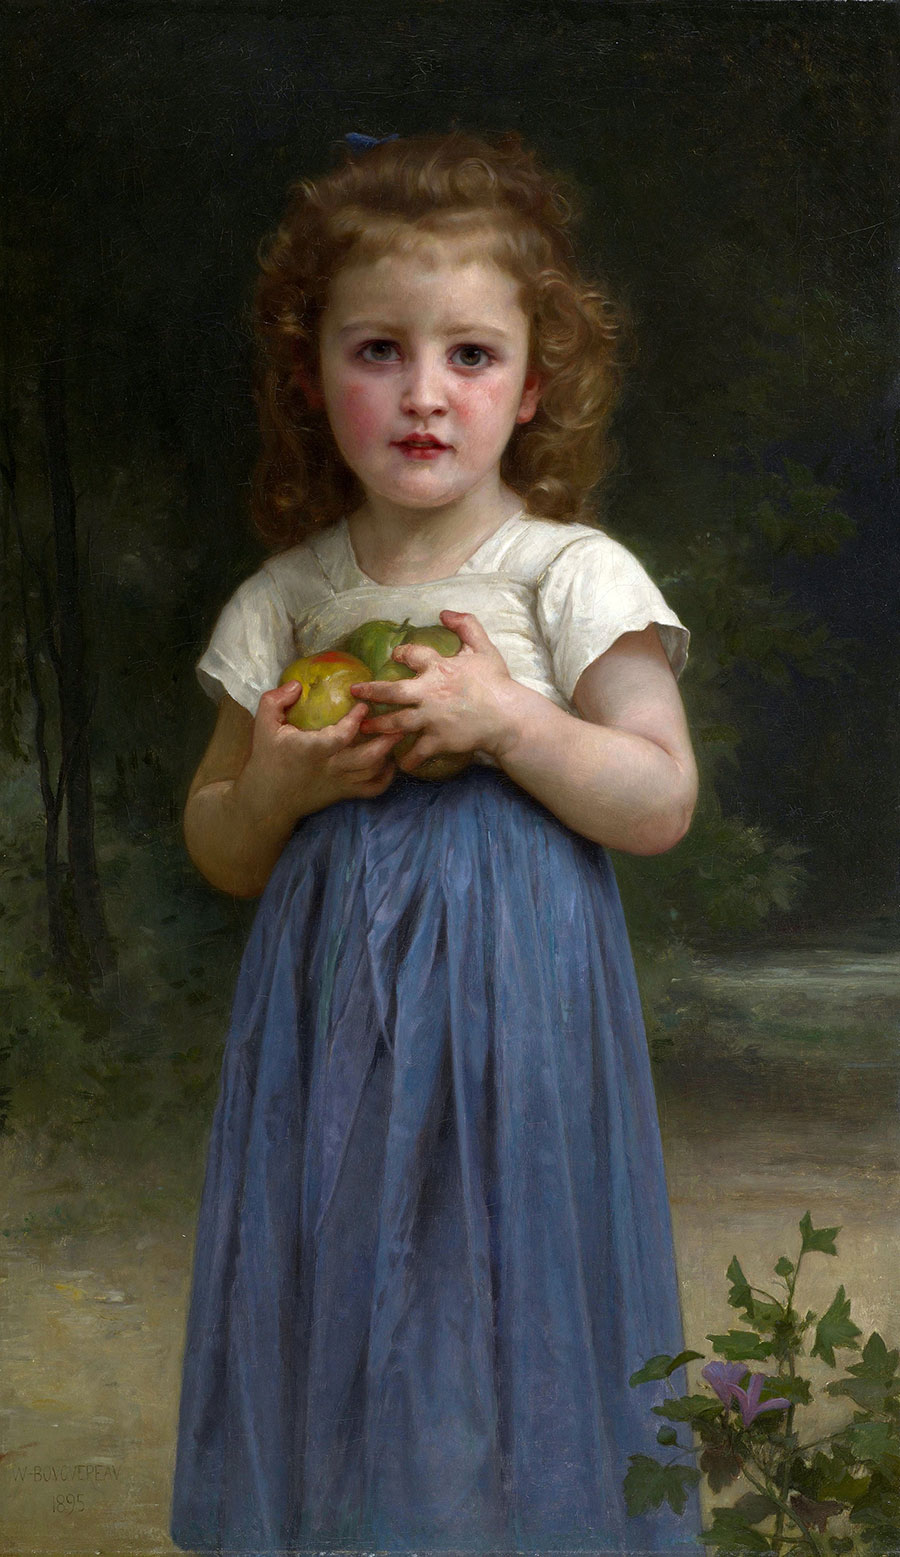 布格罗油画:《手捧苹果的小女孩》